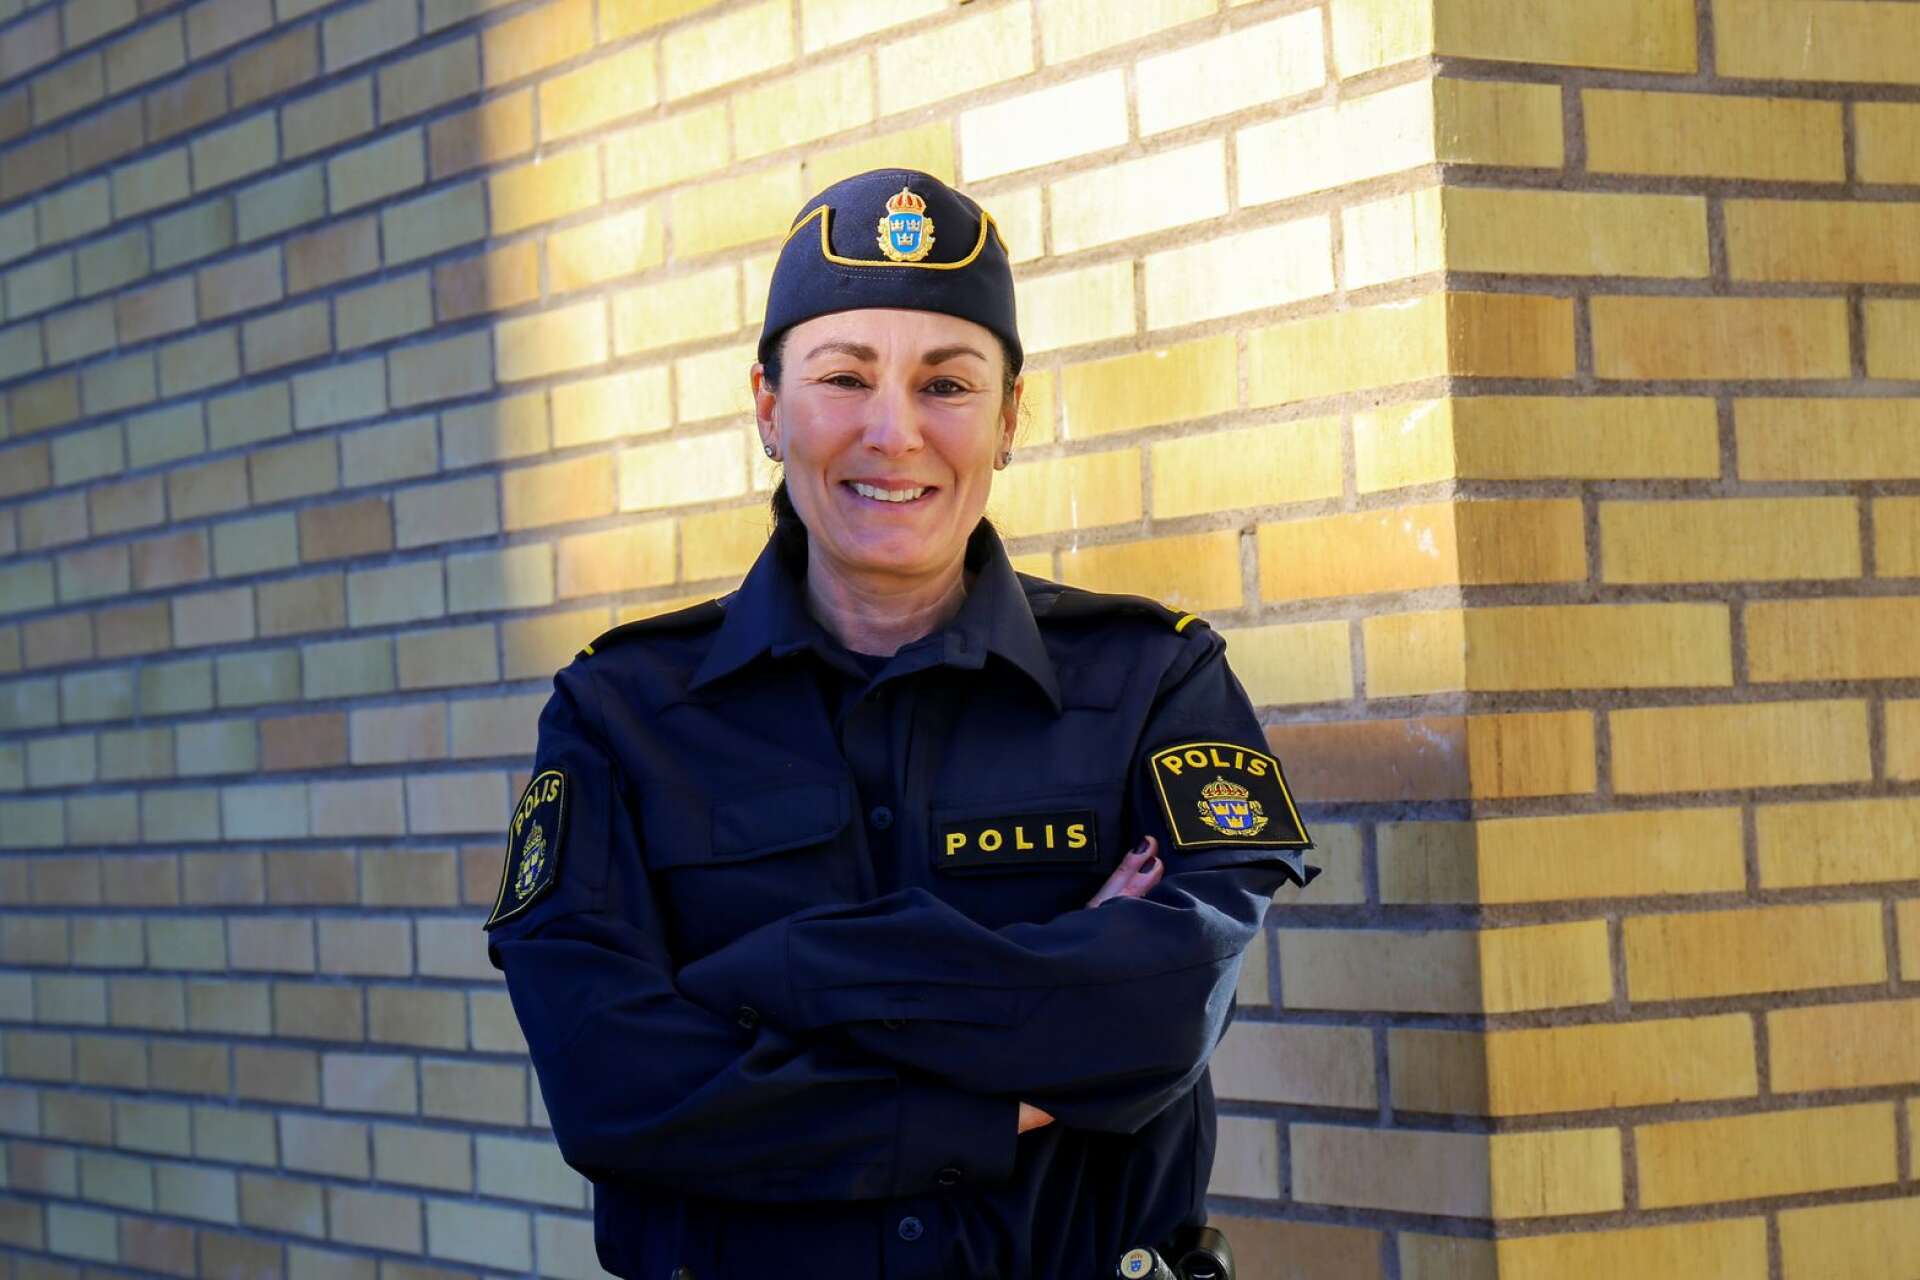 I tisdags gjorde Rebecca Vedin sin första dag som områdespolis i Dalsland, med Bengtsfors som utgångspunkt. Bakom sig har hon en 14 år lång poliskarriär.